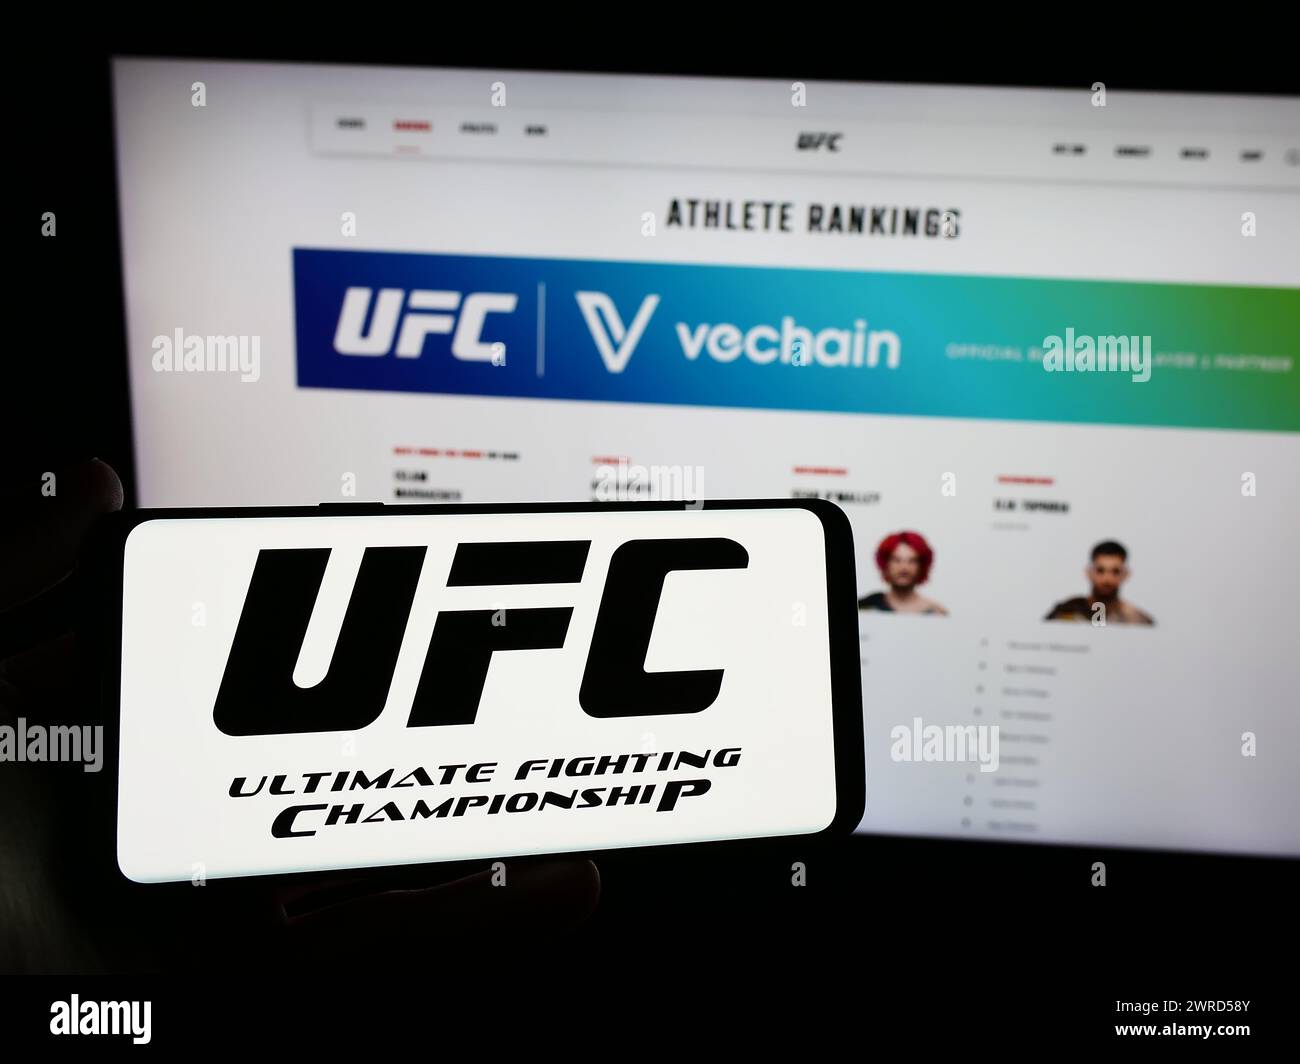 Persona que sostiene el smartphone con el logotipo de la compañía de artes marciales Ultimate Fighting Championship (UFC) delante del sitio web. Enfoque en la pantalla del teléfono. Foto de stock